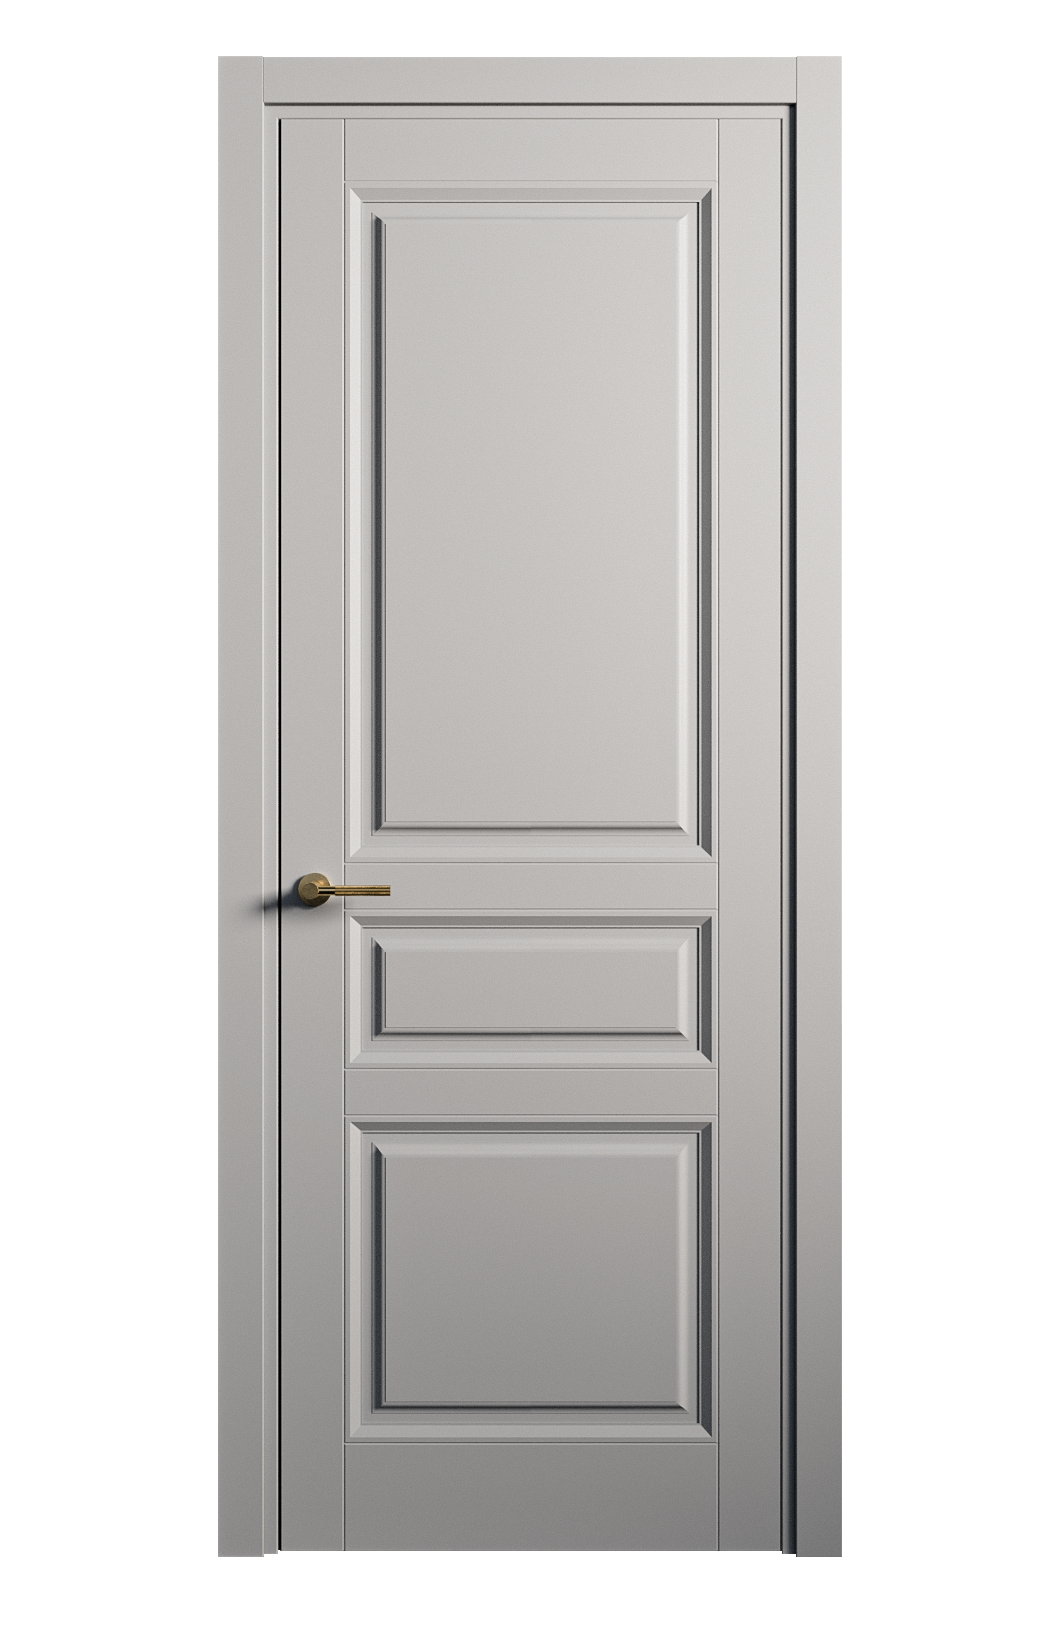 Межкомнатная дверь Venezia-2 глухая эмаль ral 7040 25741